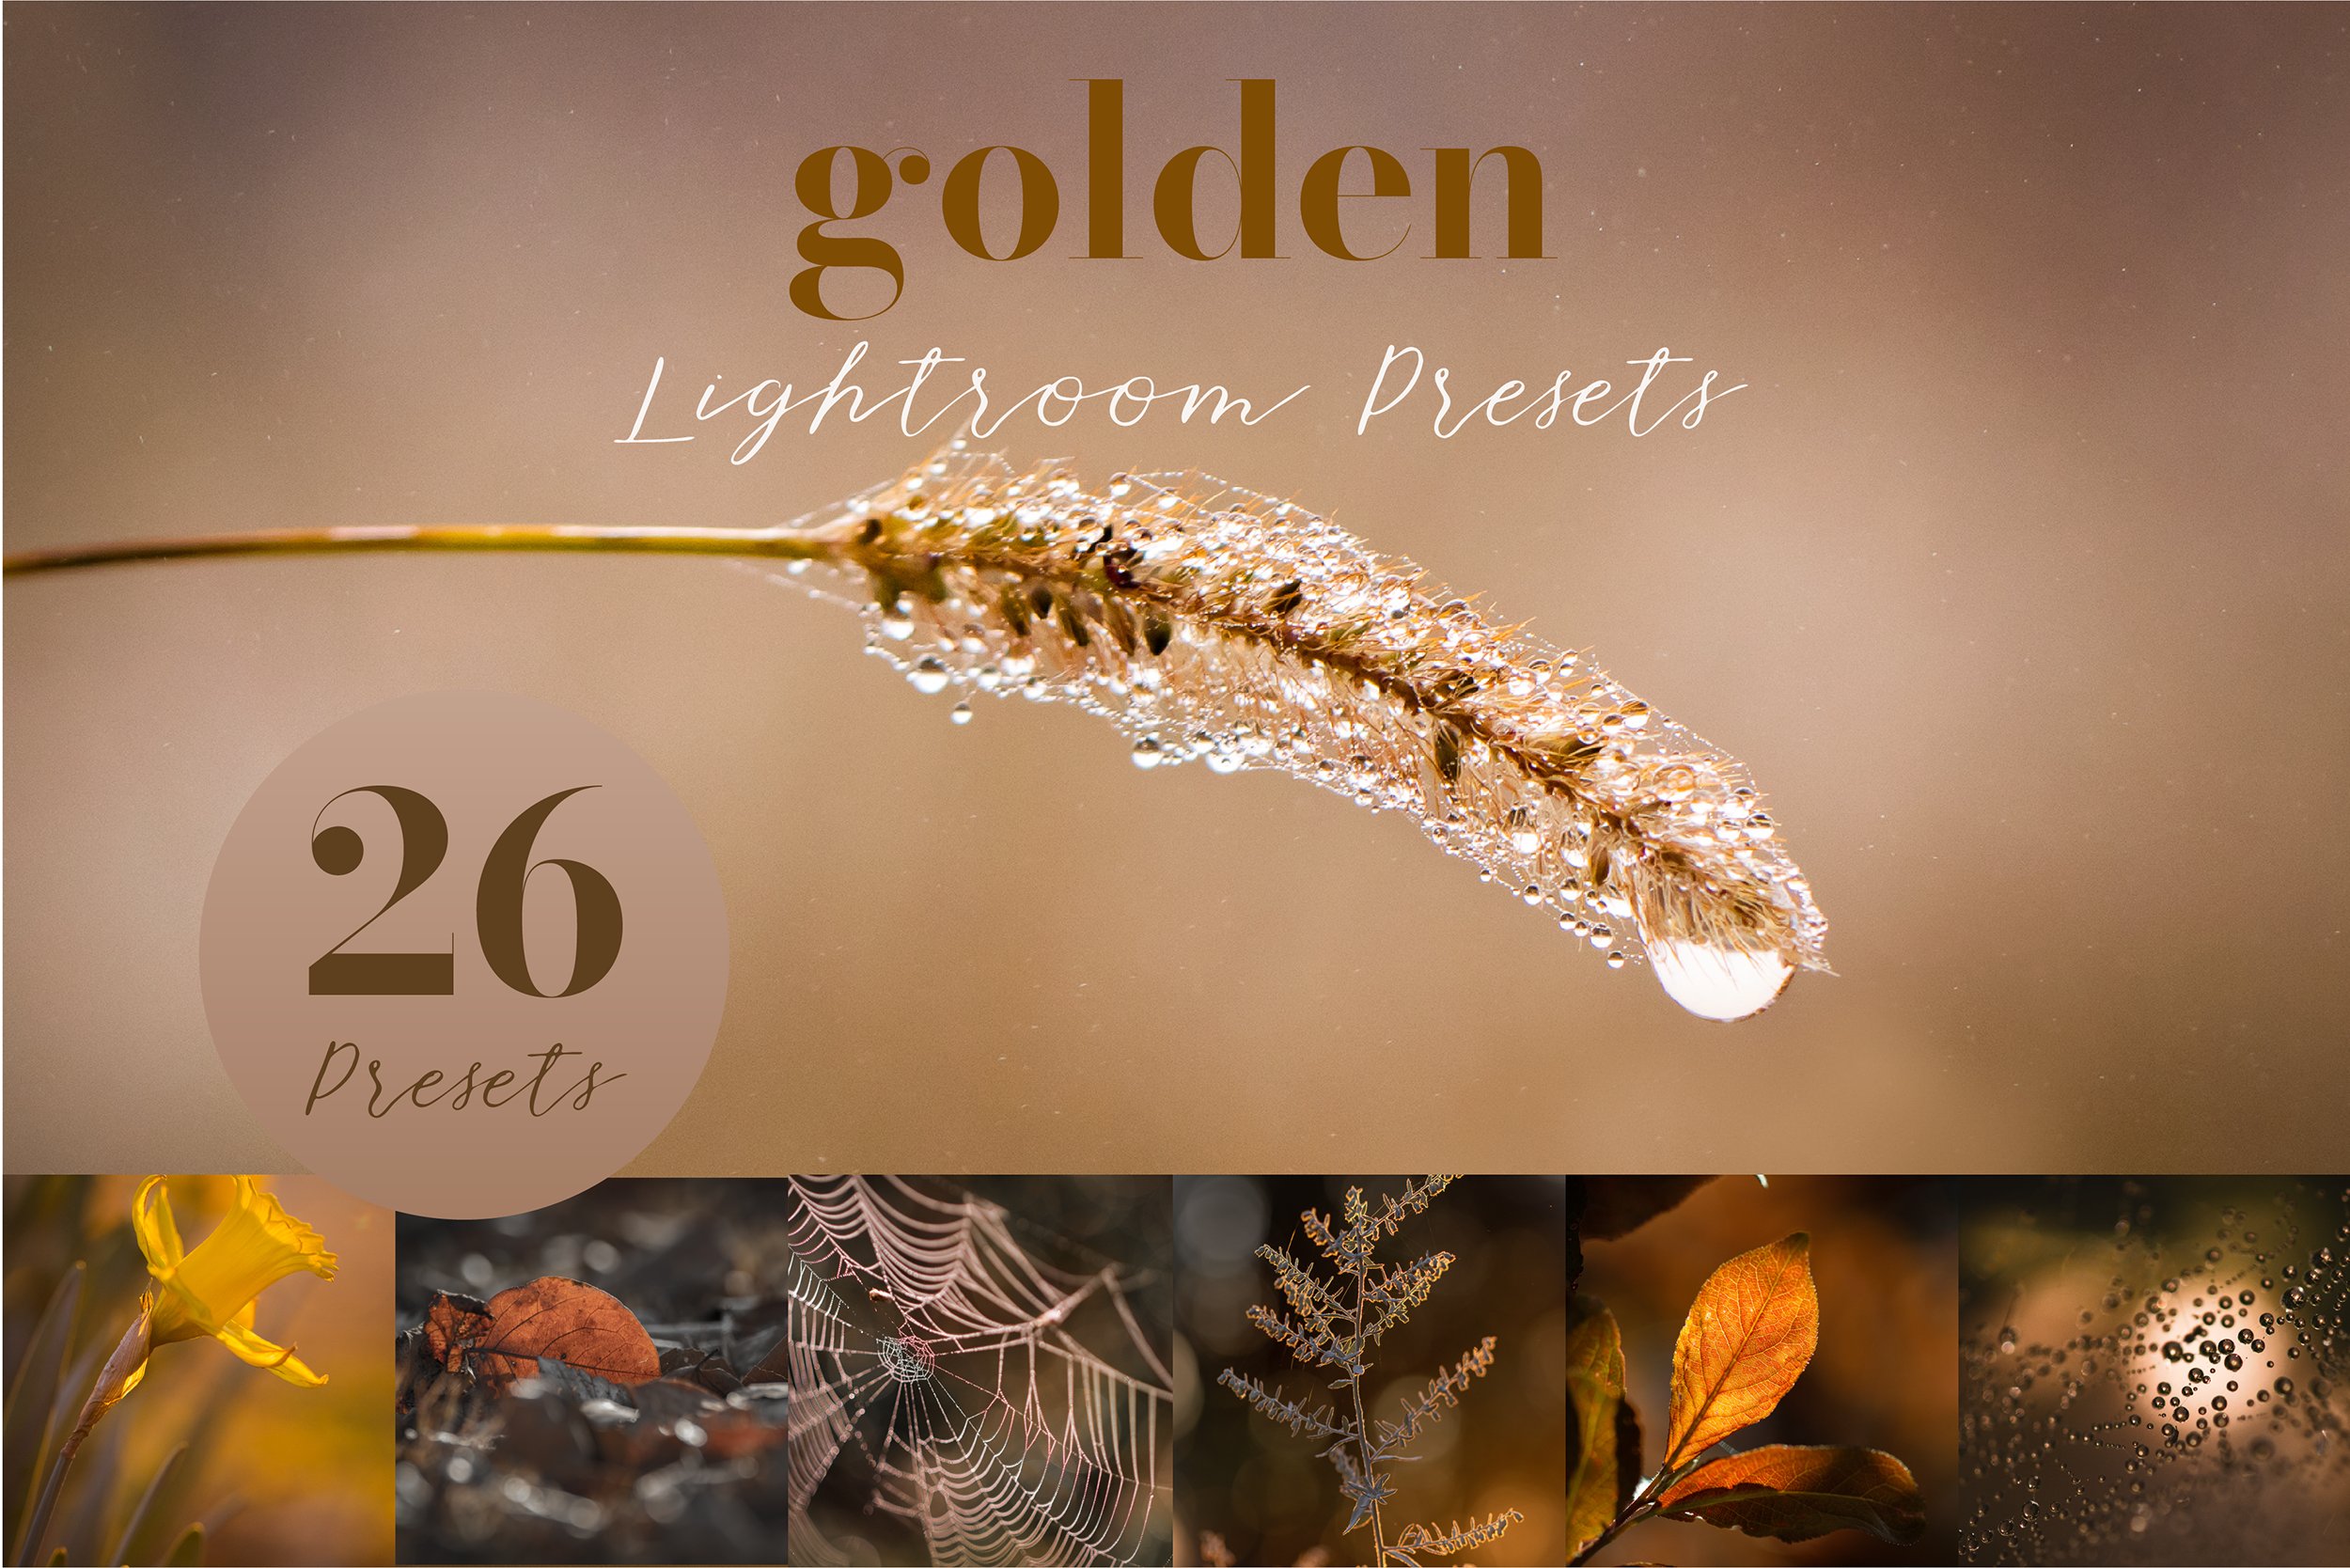 Golden Lightroom Presetscover image.